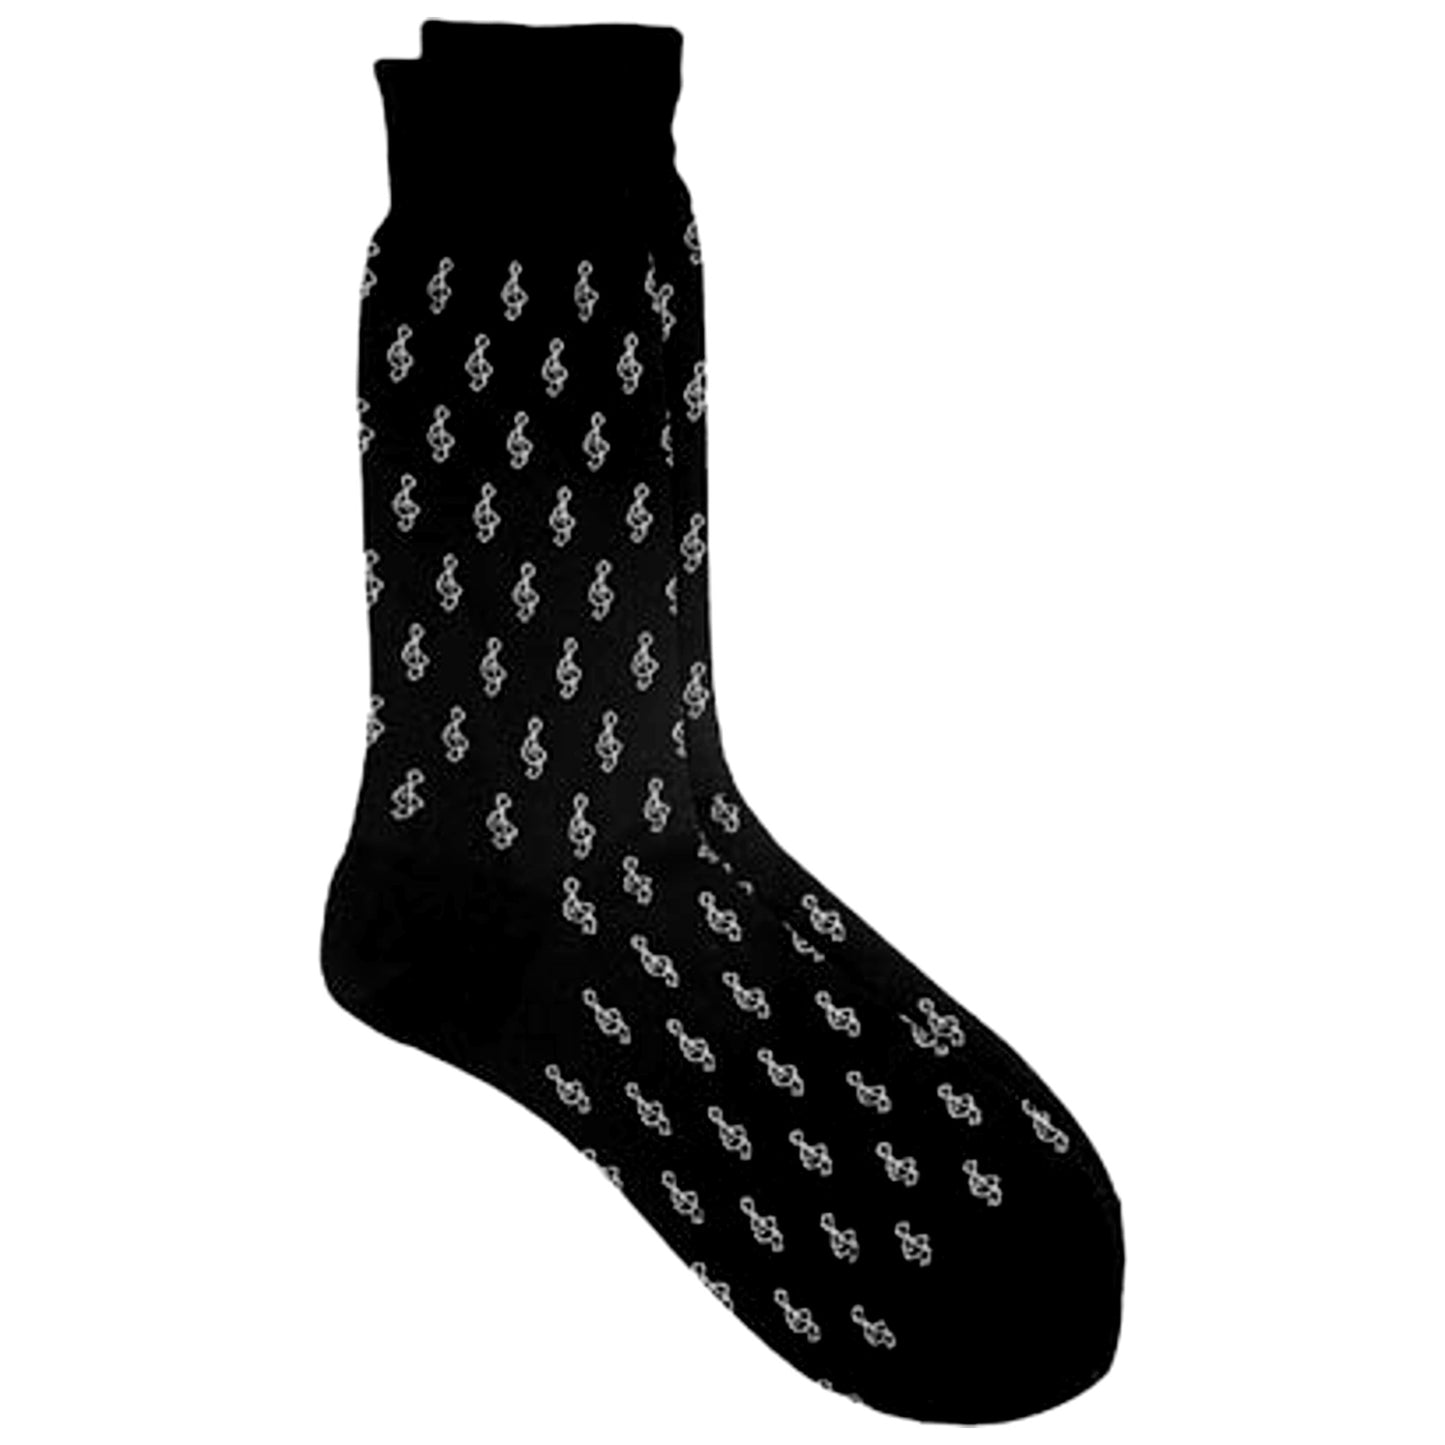 Treble Clefs Men's Socks, Black